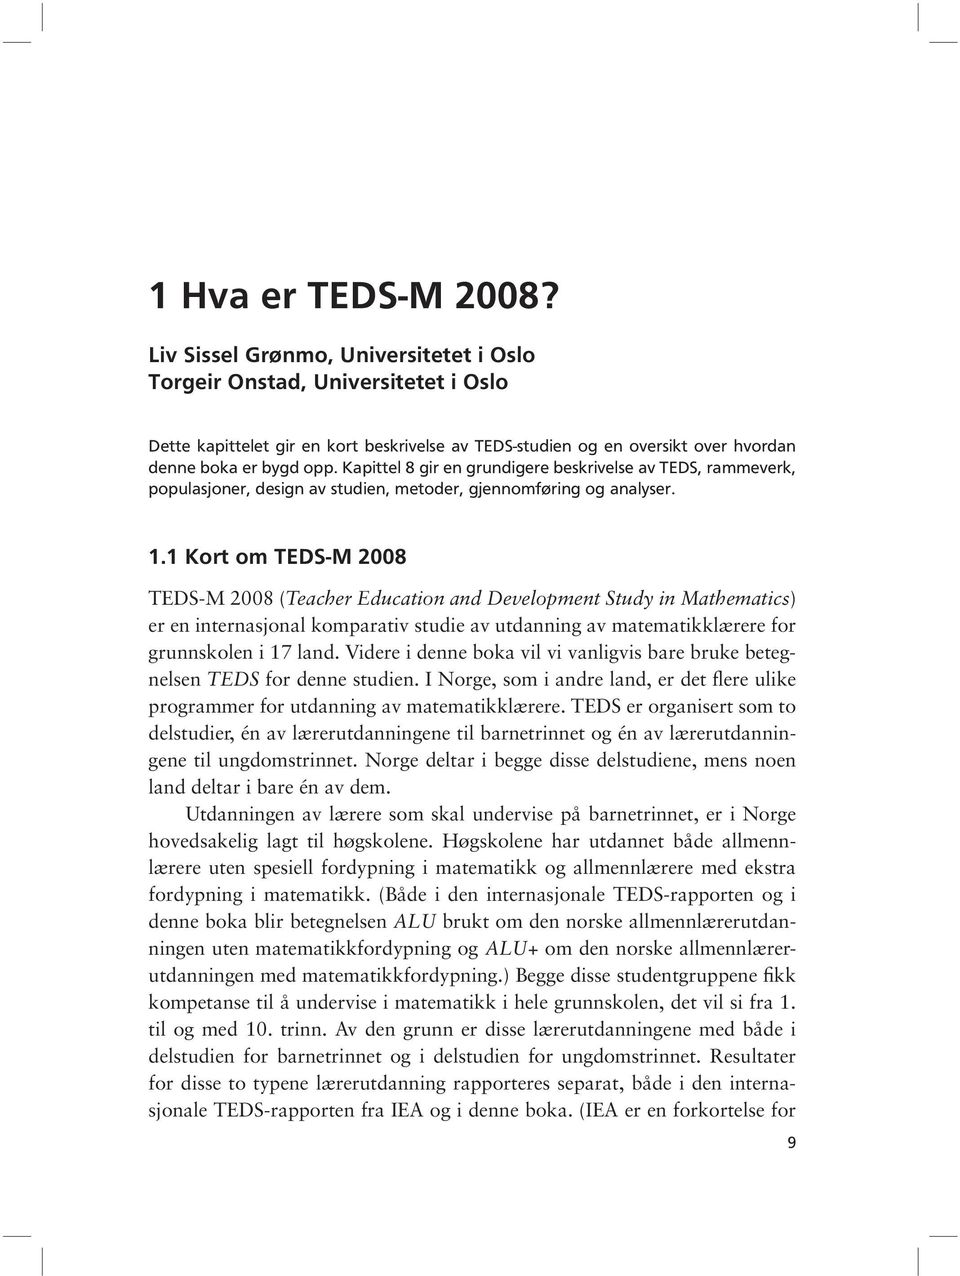 Kapittel 8 gir en grundigere beskrivelse av TEDS, rammeverk, populasjoner, design av studien, metoder, gjennomføring og analyser. 1.